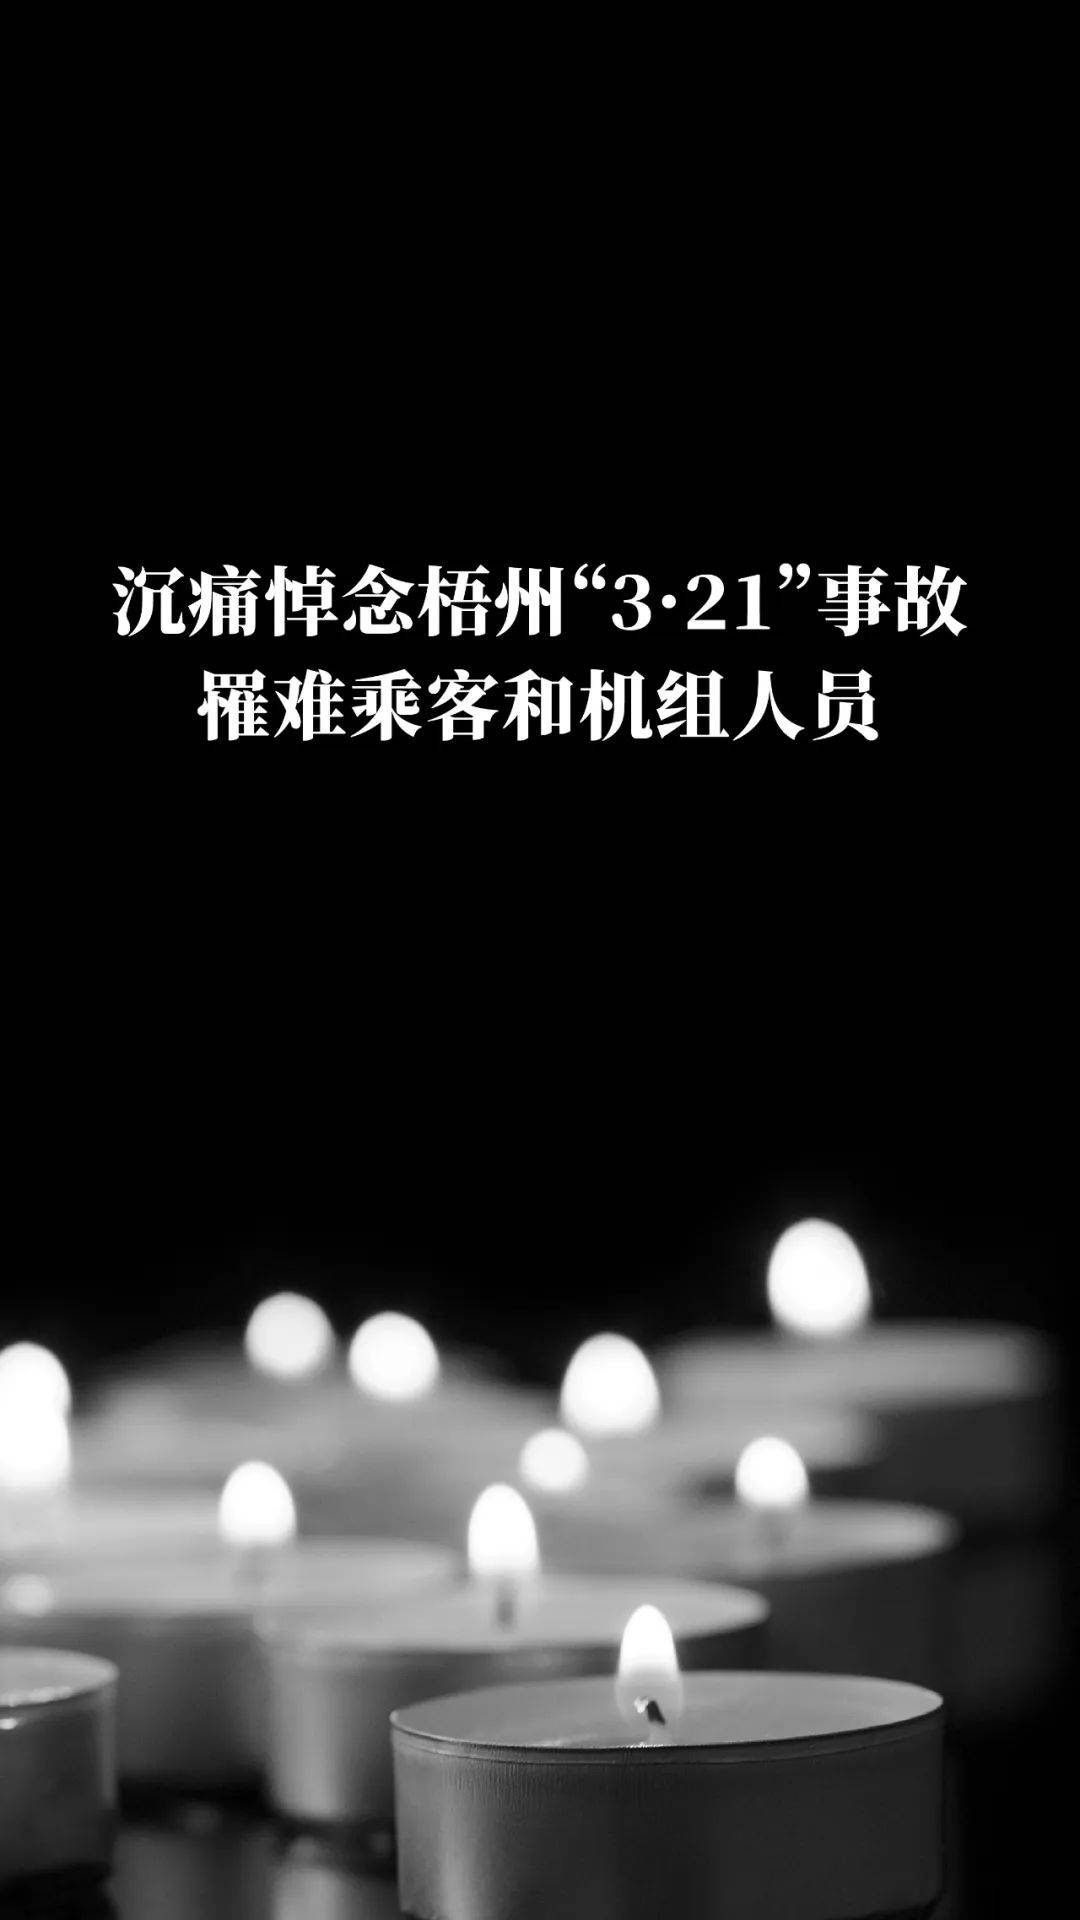 图集丨郑州地铁沙口路站现鲜花与悼念卡 解放军战士附近街道执行清淤任务 | 每日经济网